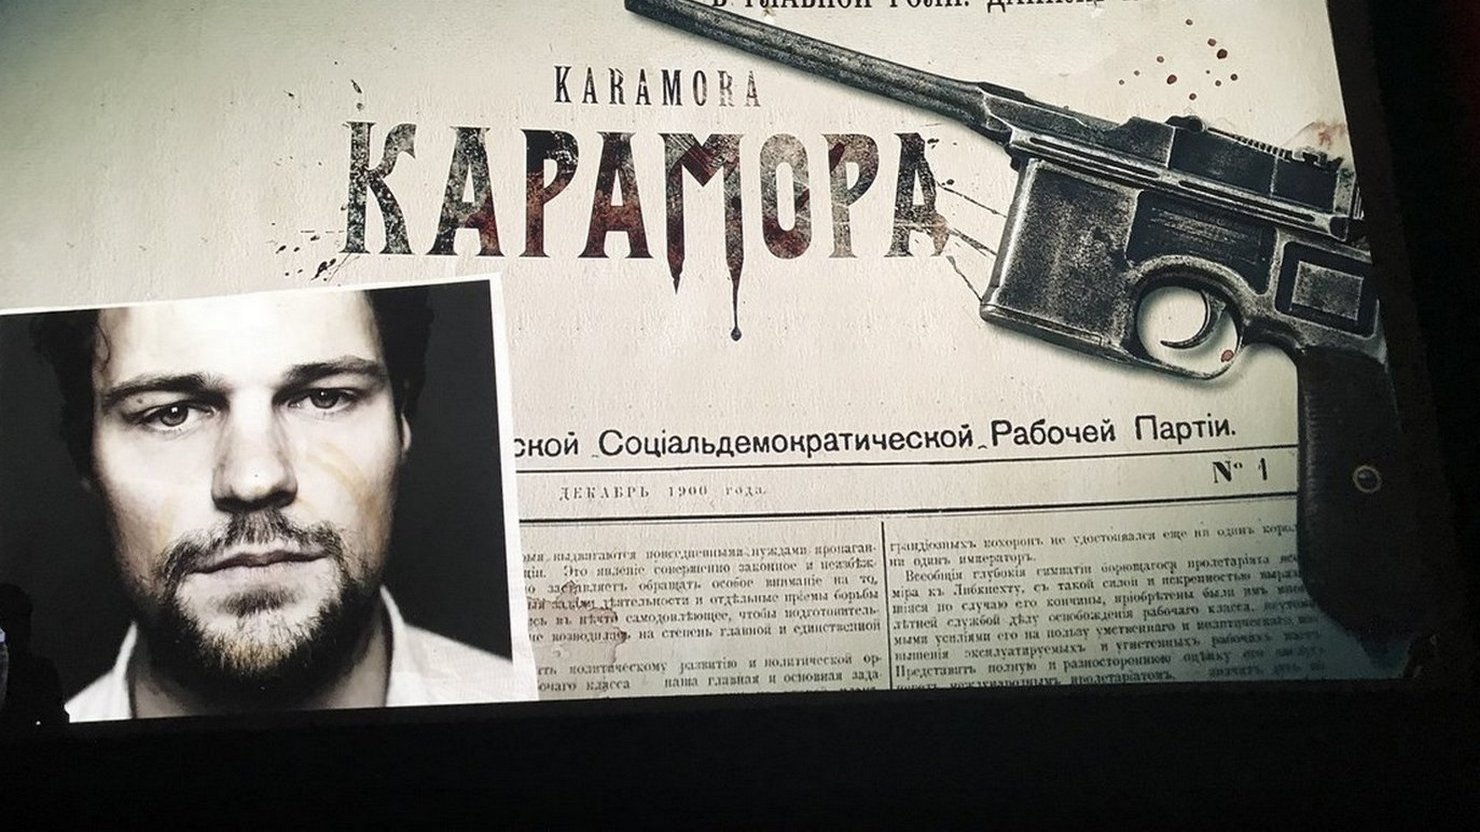 После премьеры сериала «Карамора» журналист Егор Холмогоров обвинил Данилу Козловского в пропаганде терроризма и поклялся уничтожить